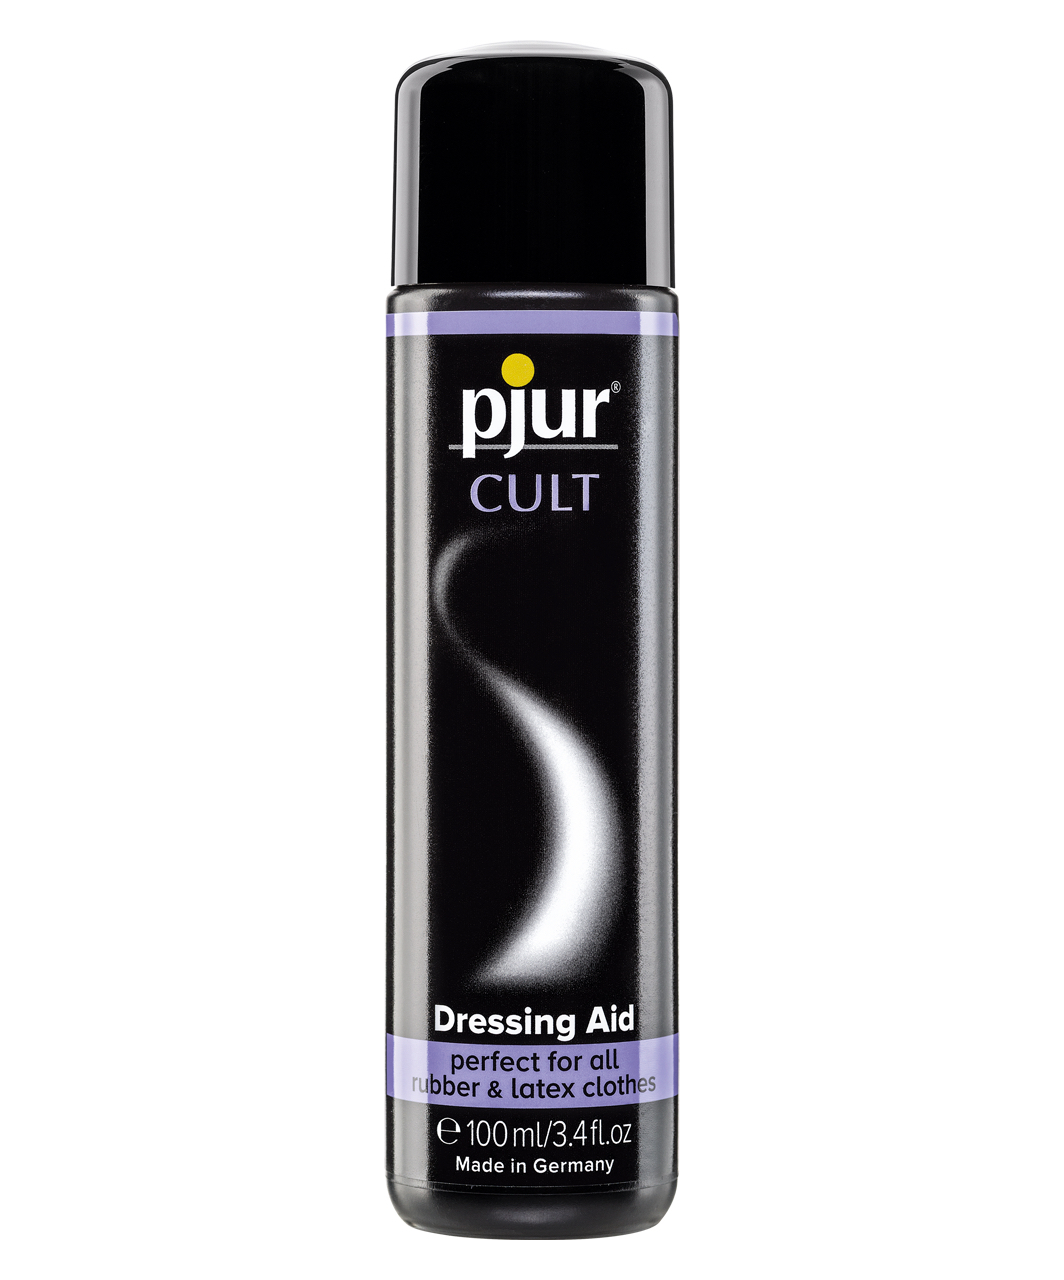 pjur Cult средство для надевания одежды из латекса (100 мл)